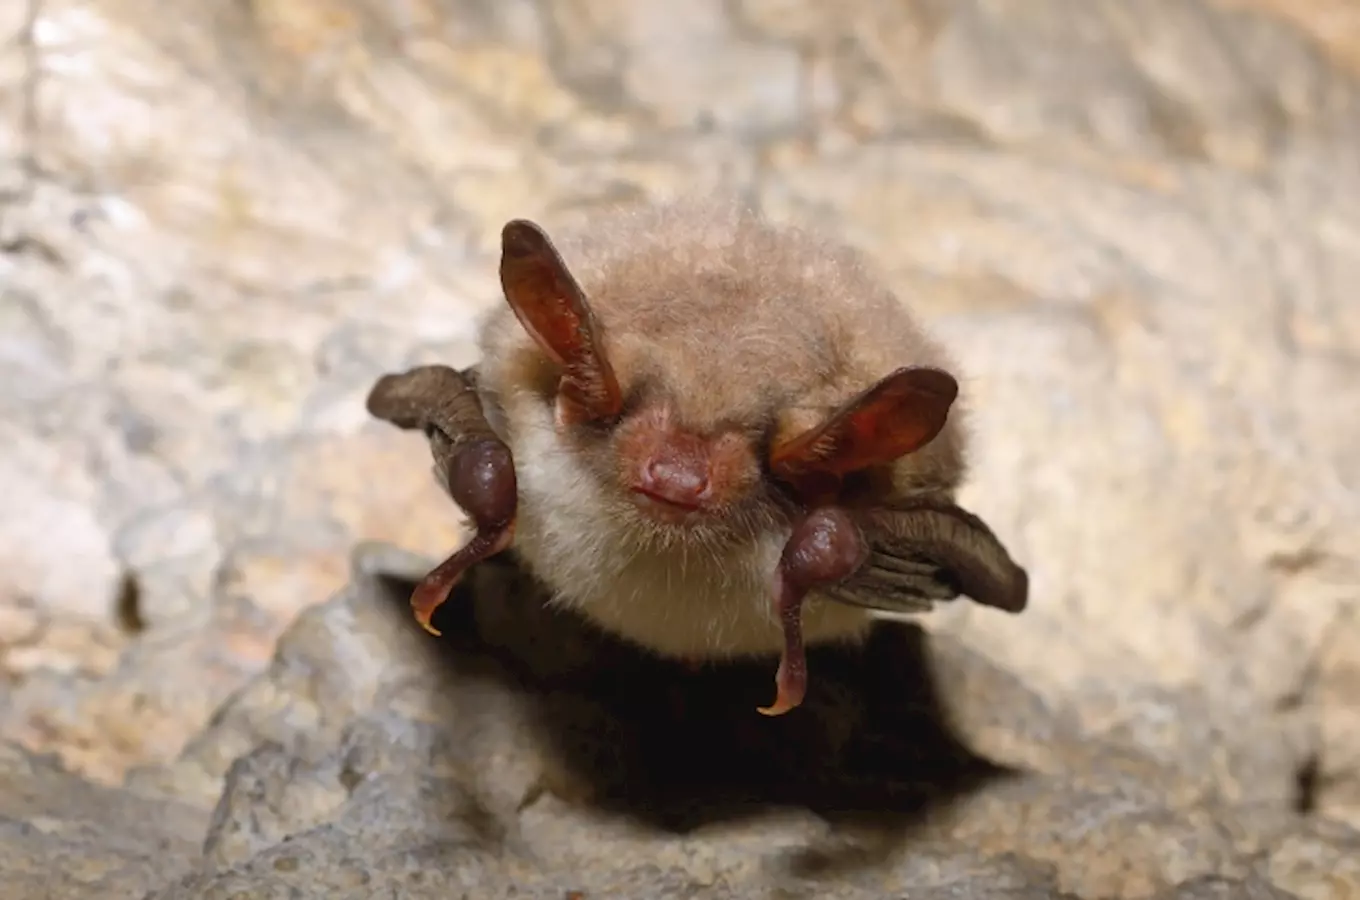 Mezinárodní noc pro netopýry představí ukázky odchytu a prezentace živých netopýrů v klášteře Kladru